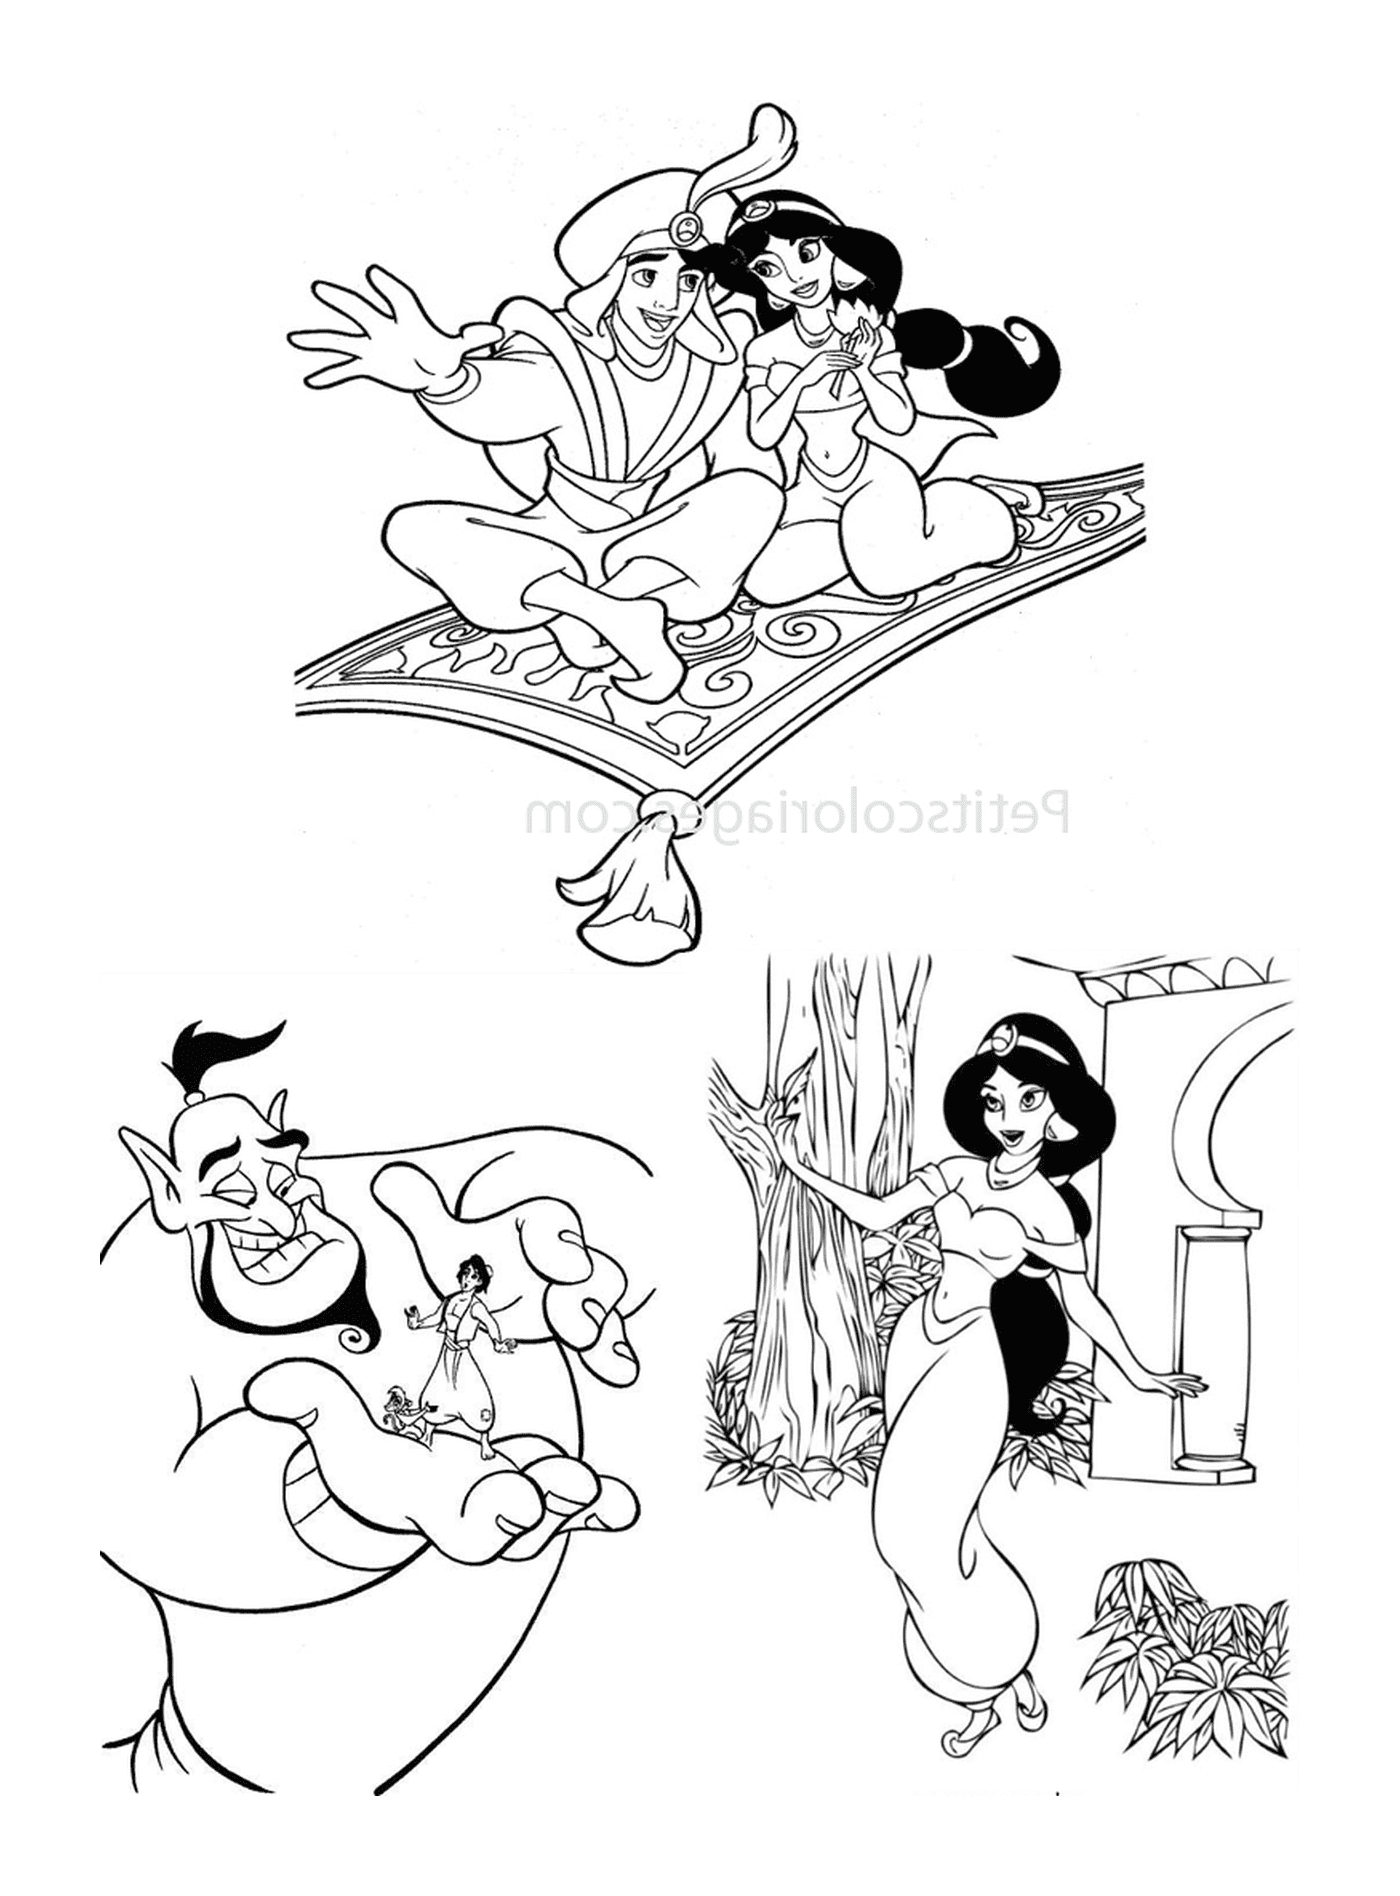  Рисунки карикатурных персонажей 